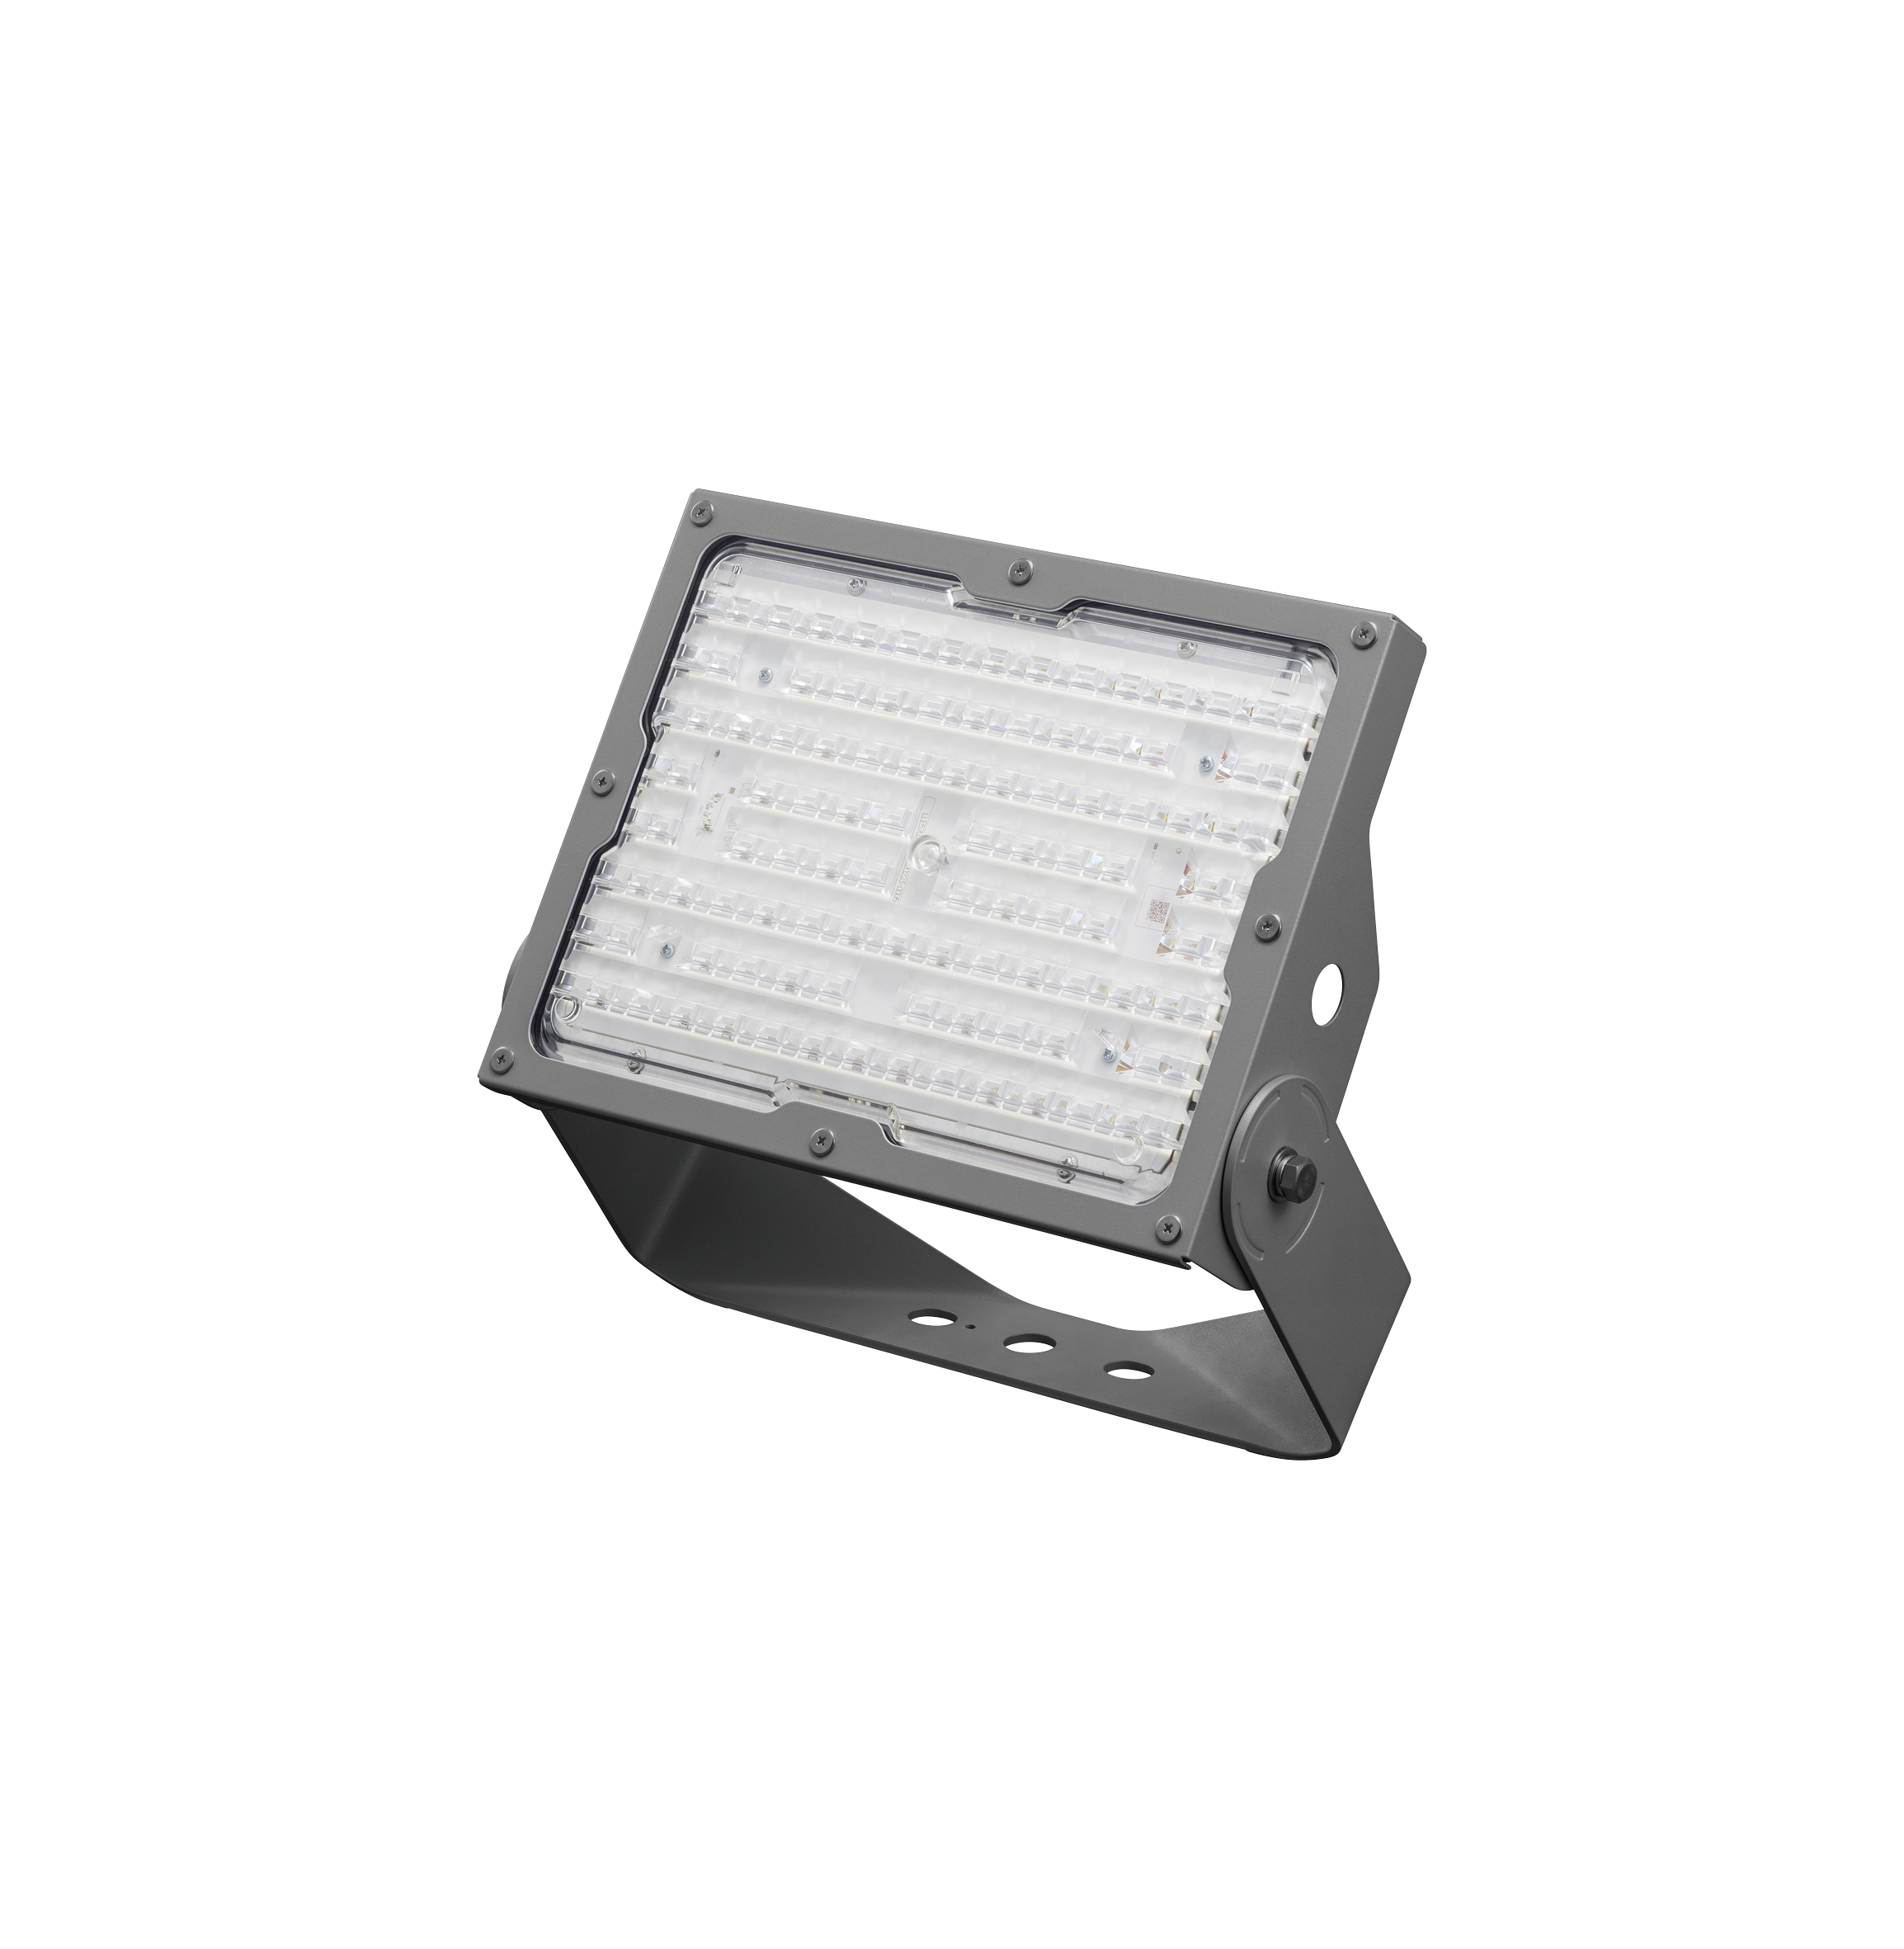 上等 パナソニック NYS15240 LE9 天井直付型 据置取付型 LED 昼白色 投光器 広角タイプ配光 防噴流型 耐塵型 パネル付型  NYS15240LE9